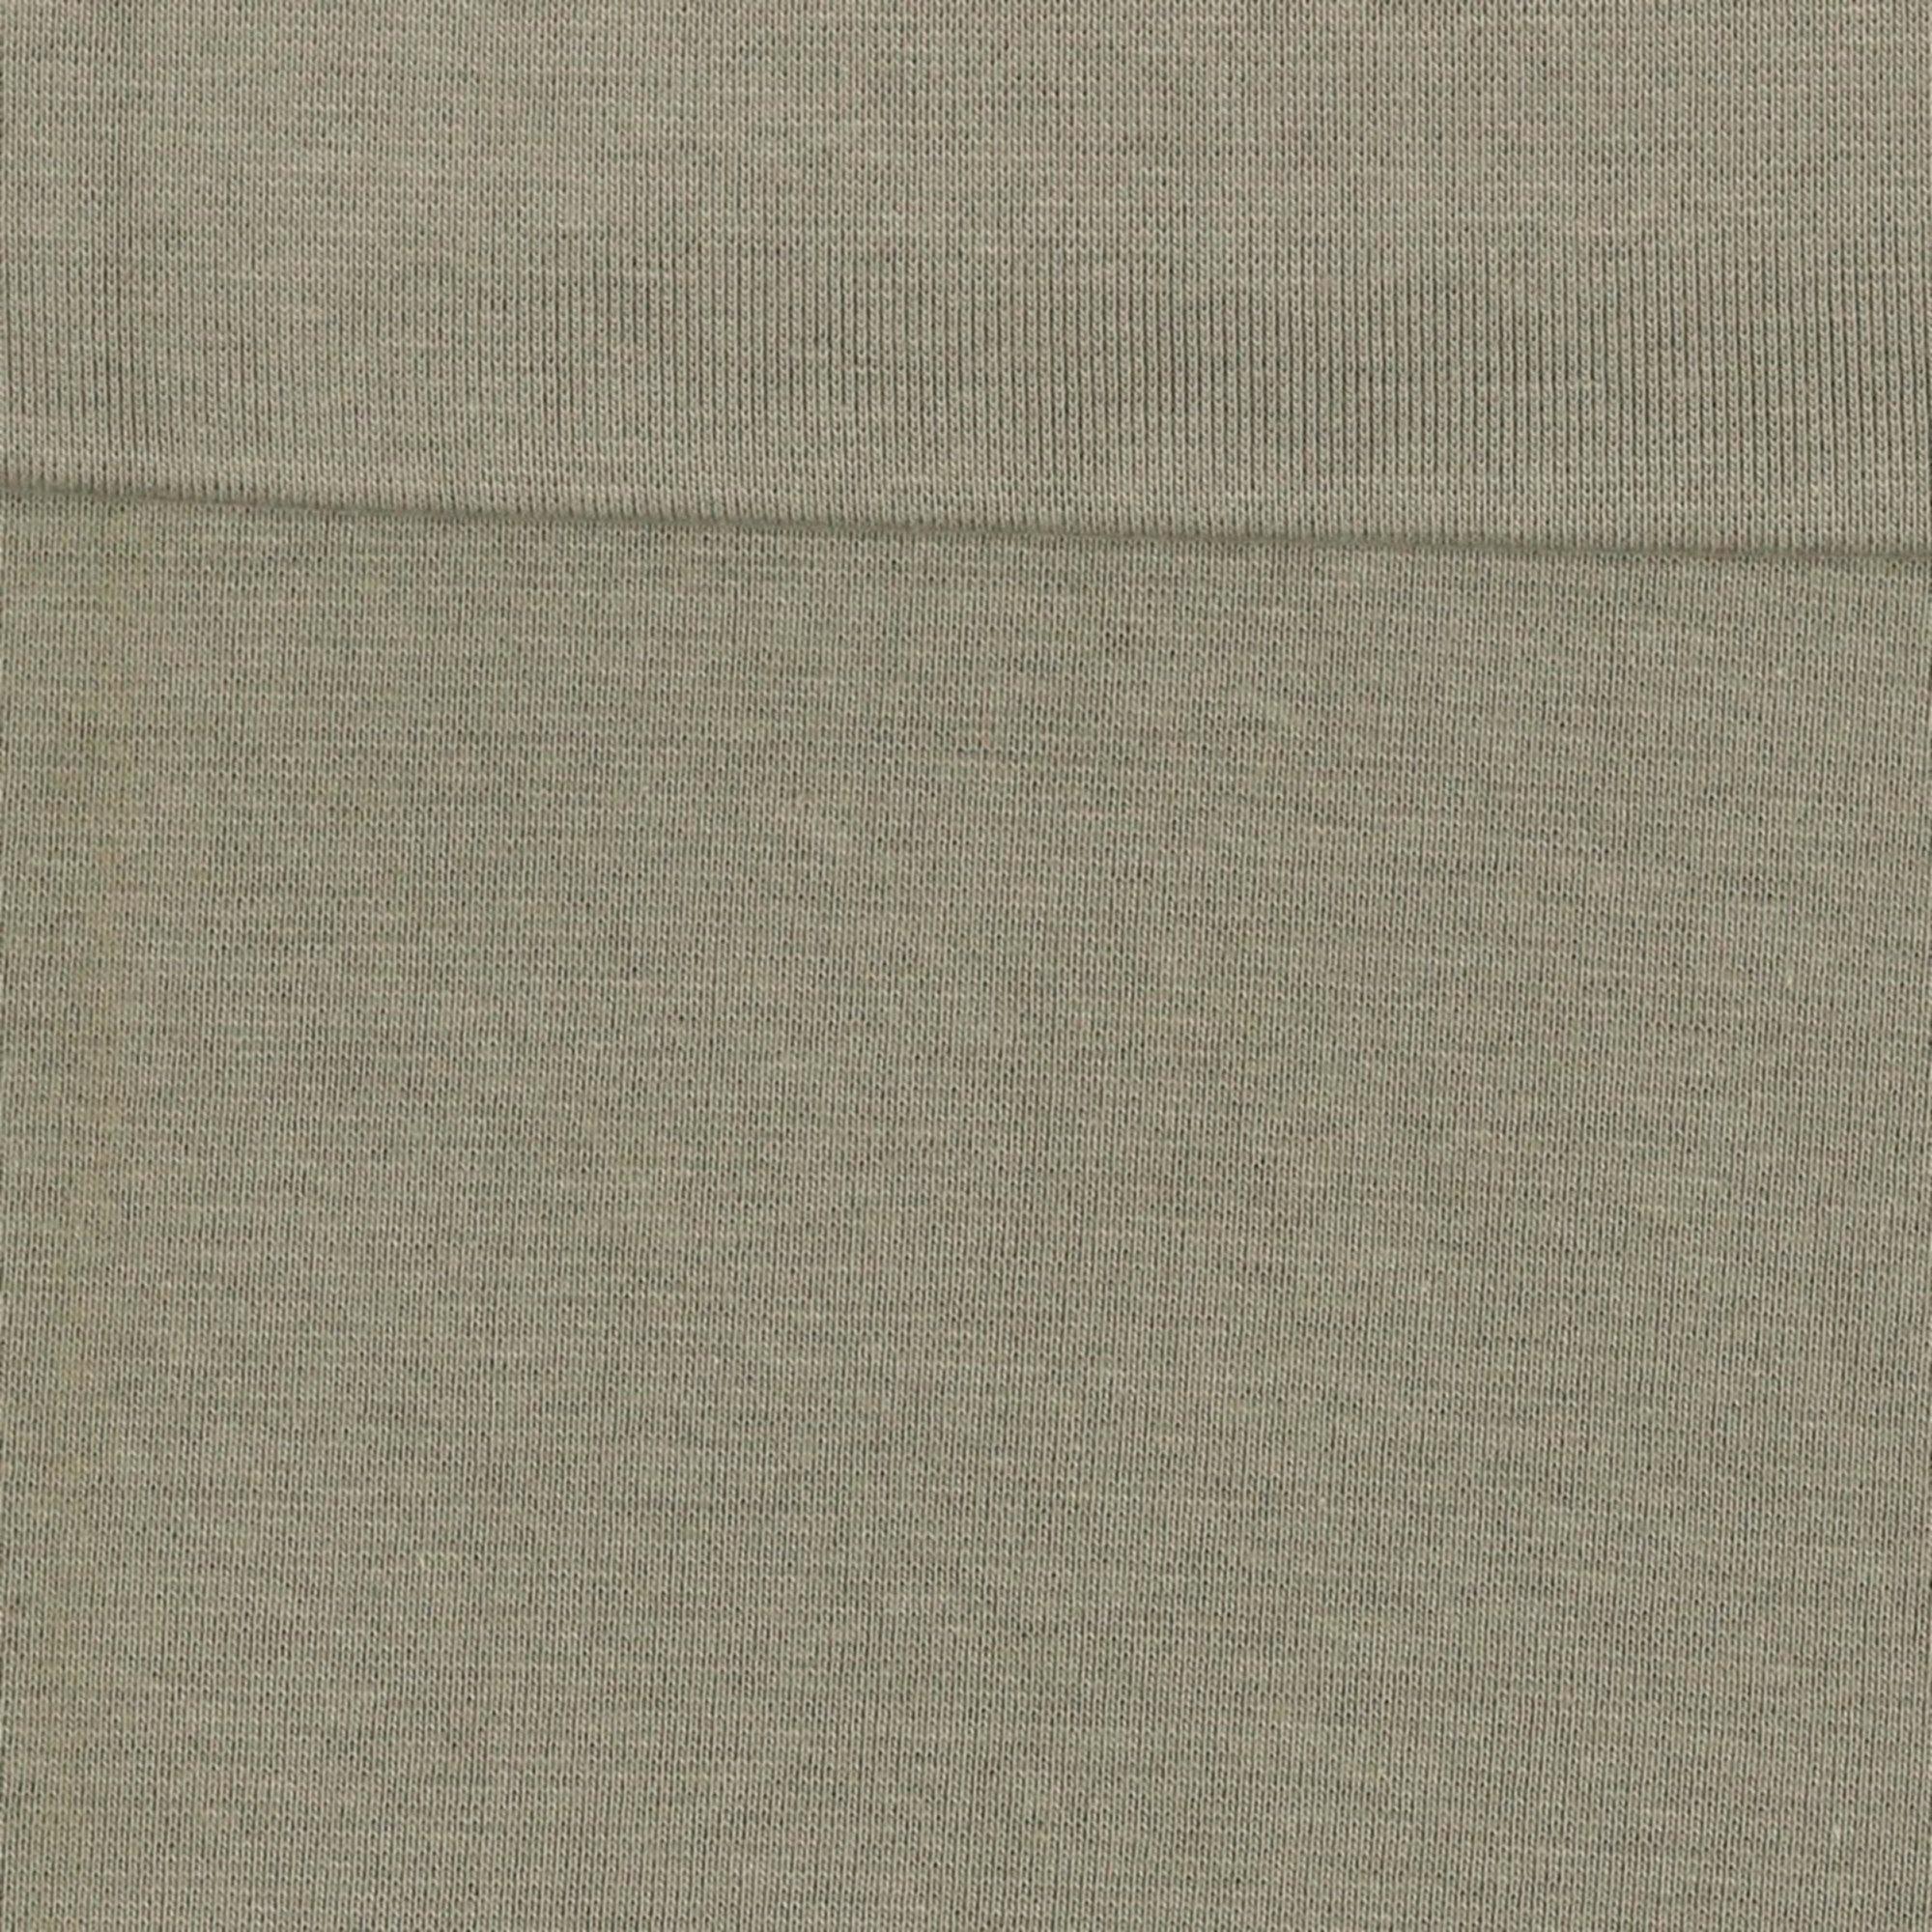 Organic Rib Knit - Taupe tubular ribbing-Organic Rib Knit-Jelly Fabrics